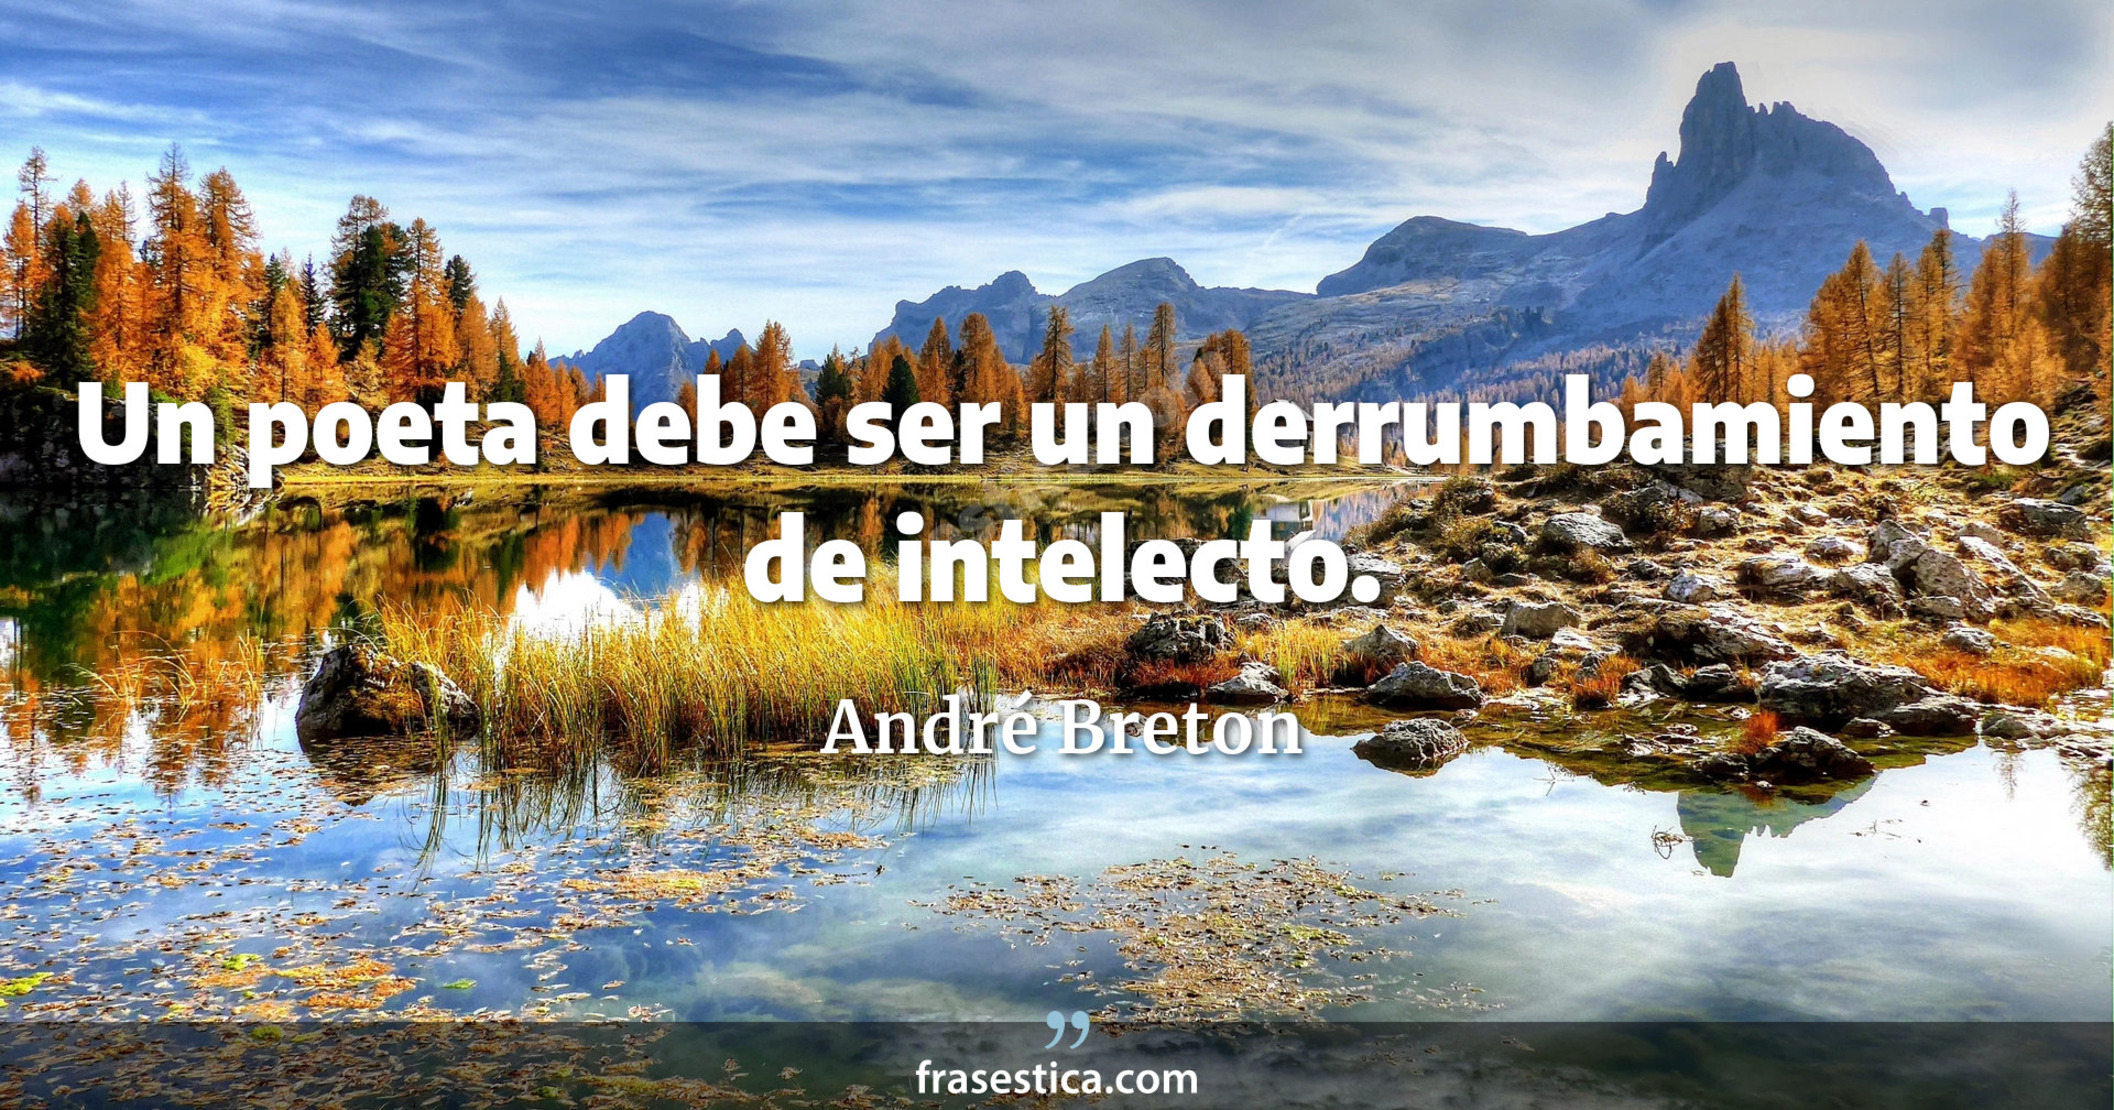 Un poeta debe ser un derrumbamiento de intelecto. - André Breton